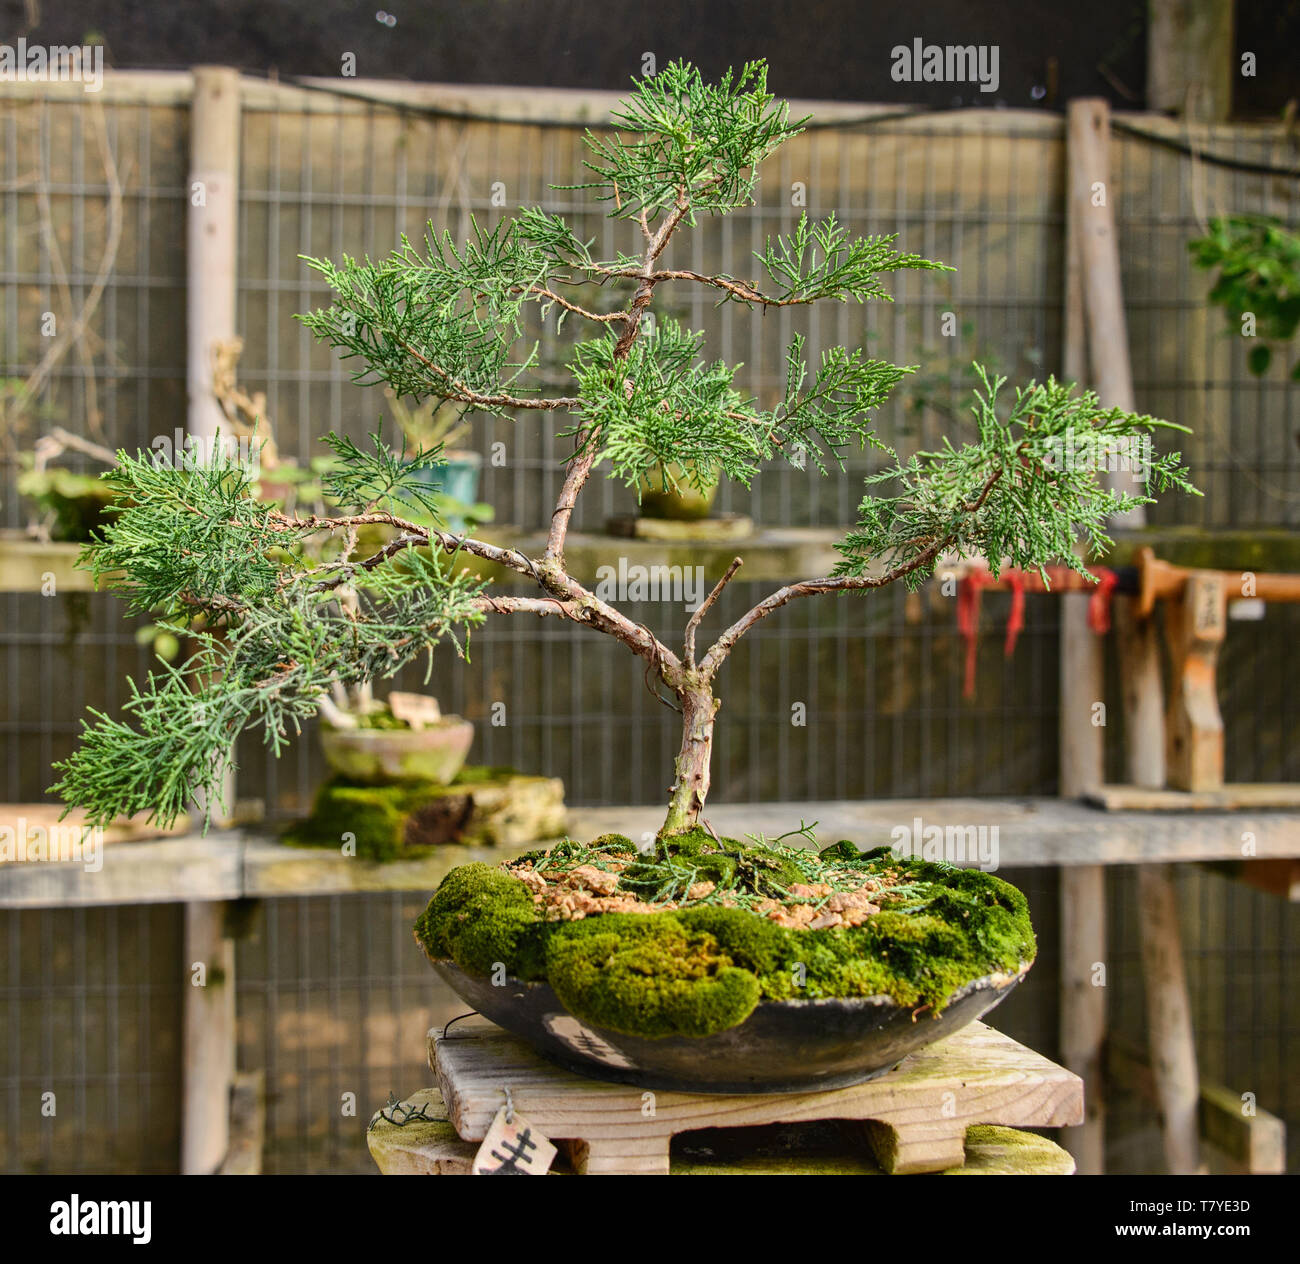 Bonsai tree in the Jardin de Corazon Japanese garden, La Serena, Chile  Stock Photo - Alamy